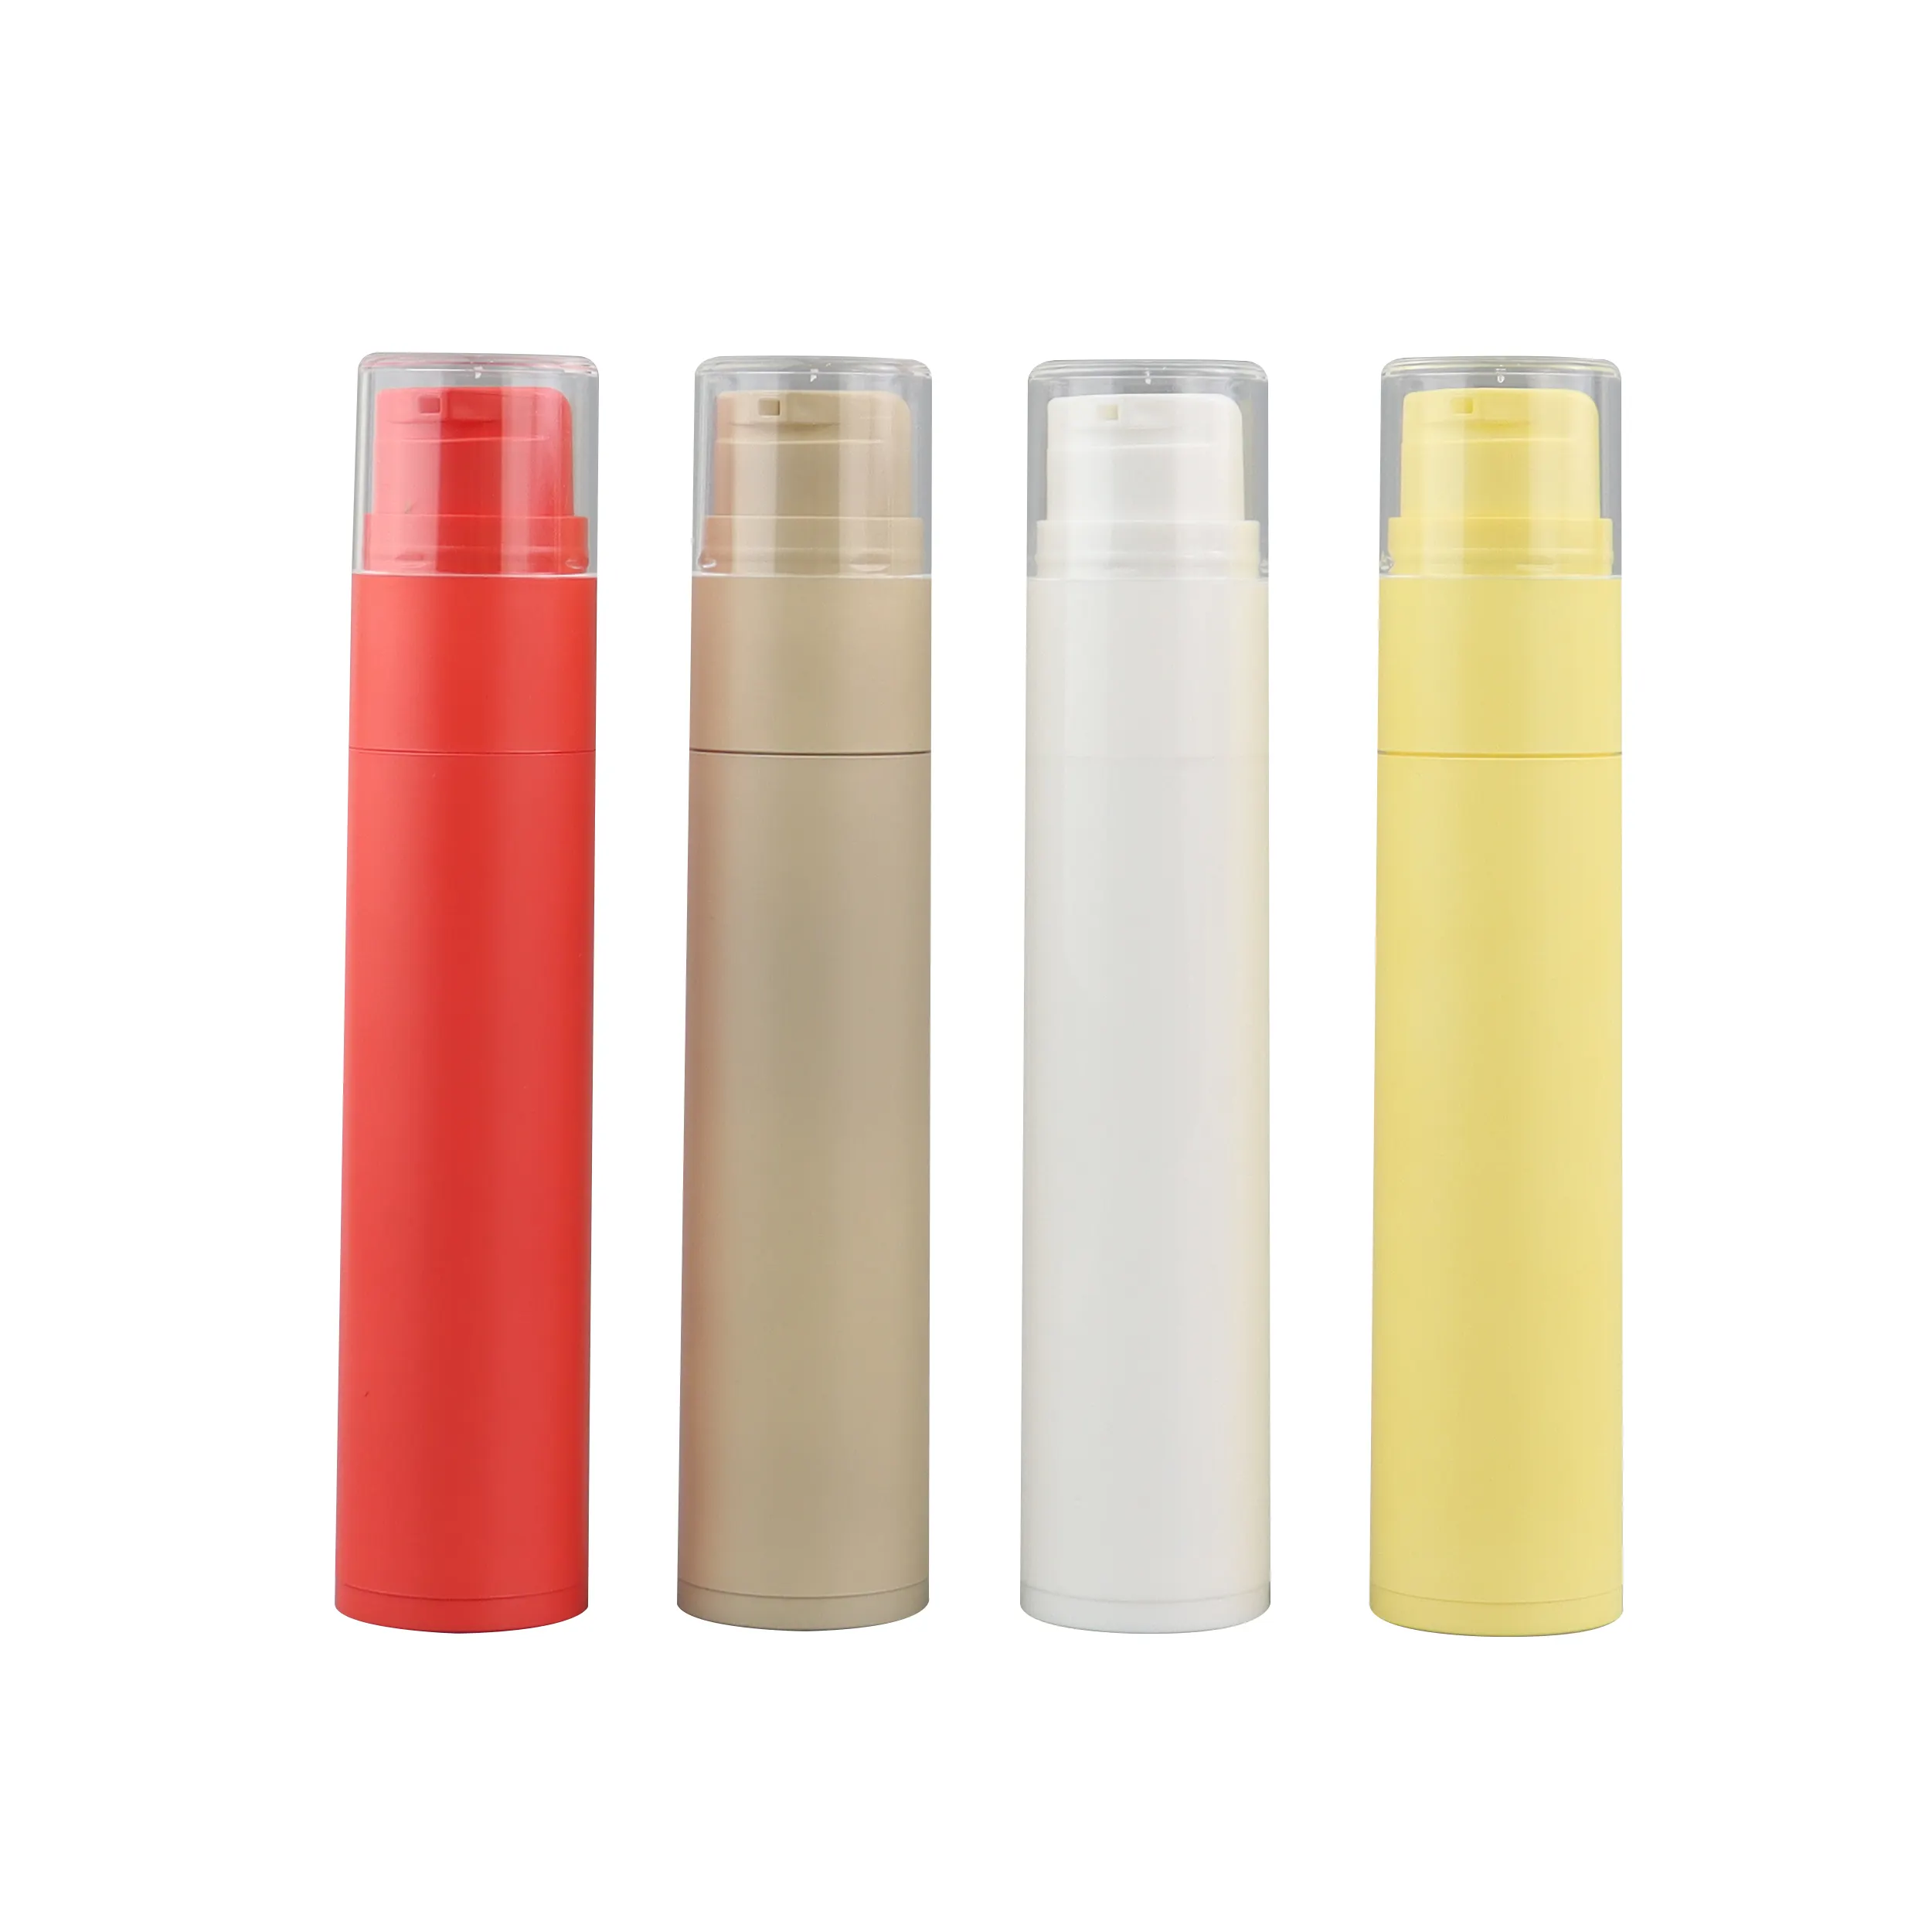 Renkli PP plastik kozmetik havasız pompa diş macunu cilt bakım kremi cilt bakımı ambalajı için tüp şişesi 60ml